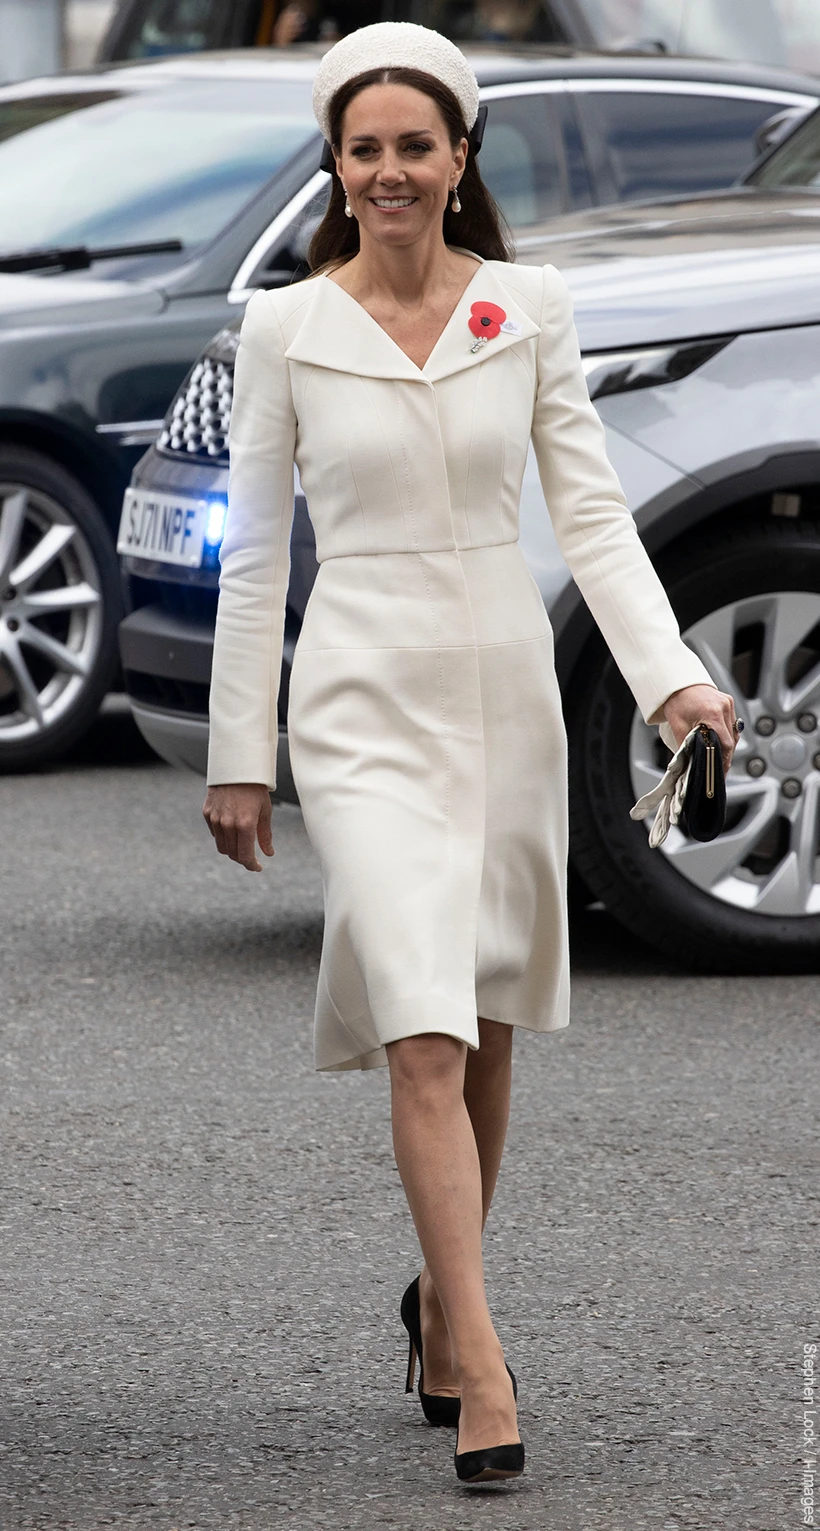 Kate Middleton White Coat | vlr.eng.br